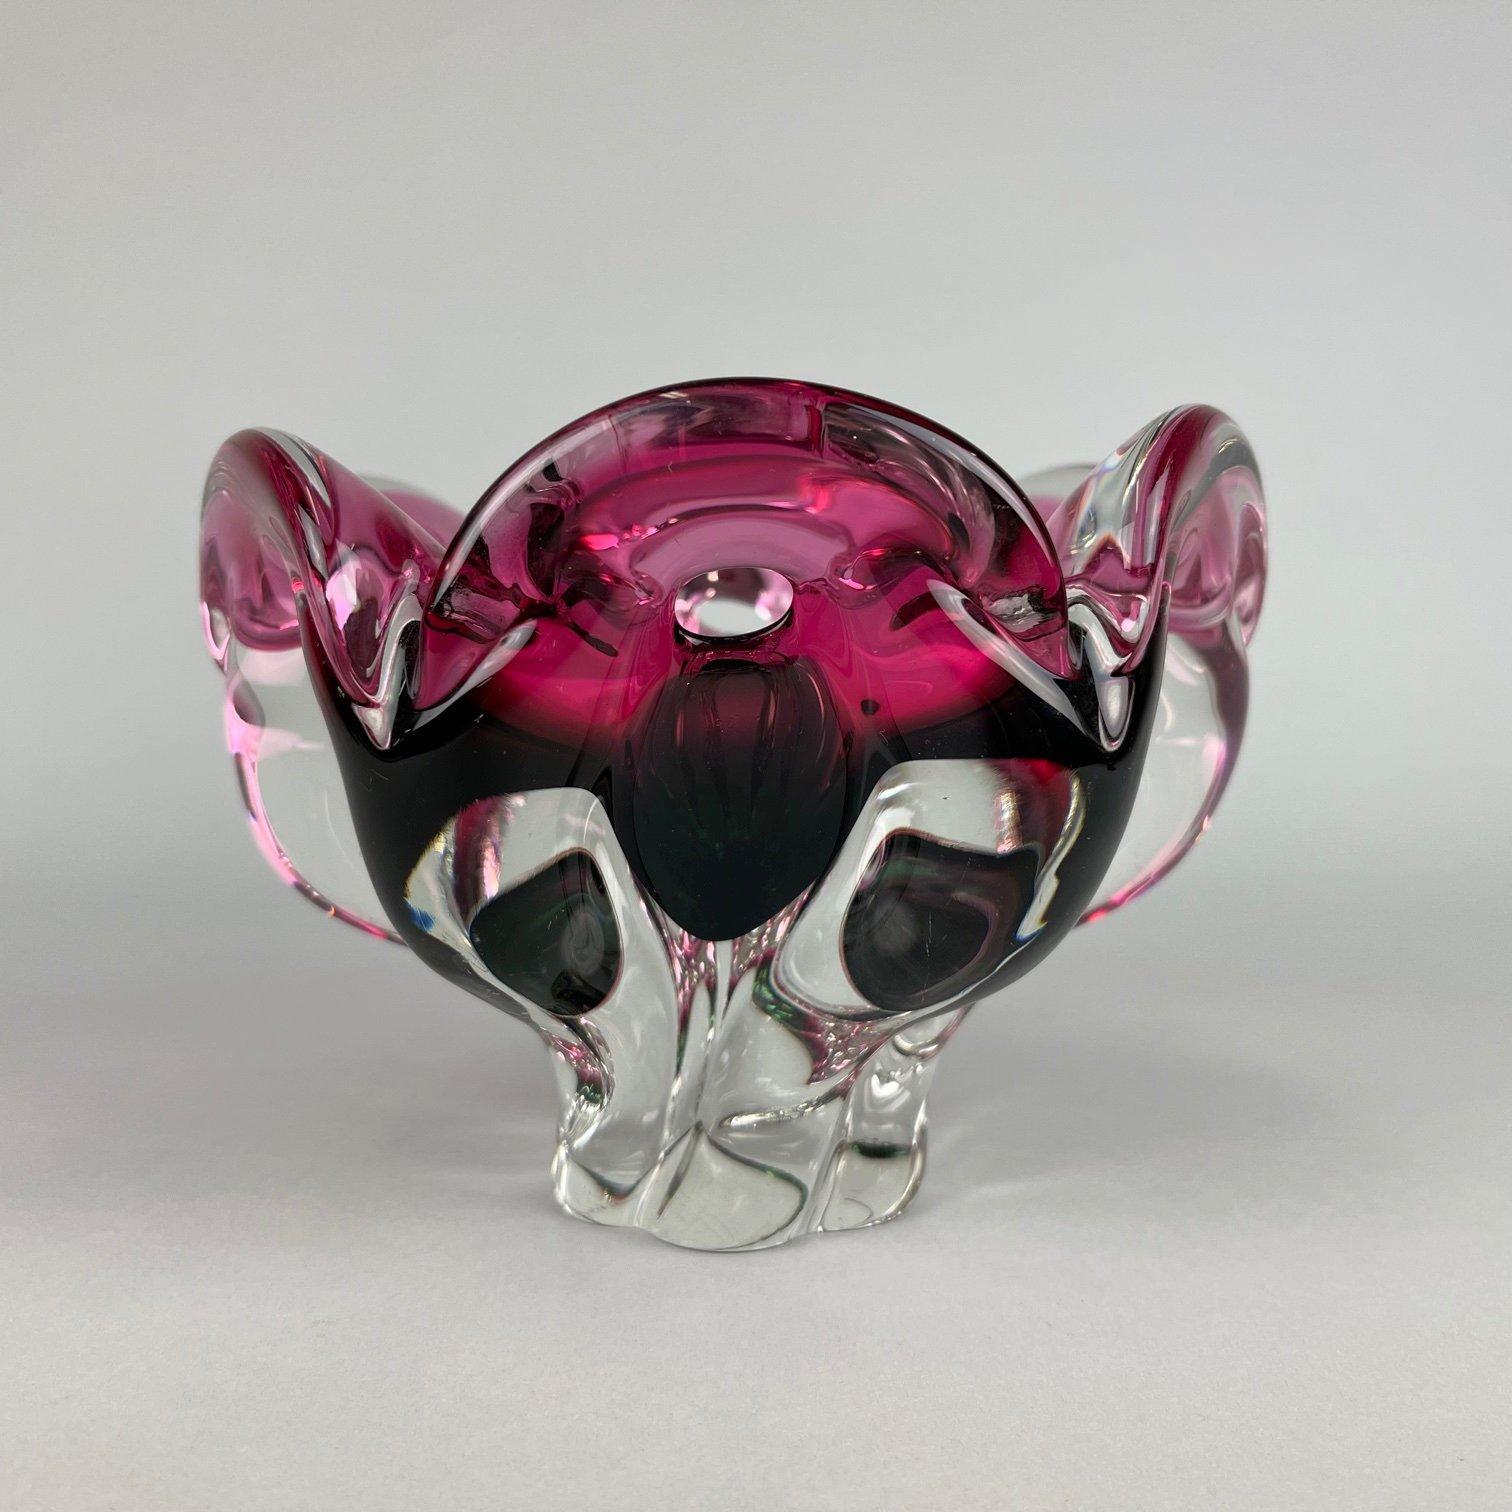 Mid-Century Modern Art Glass Bowl by Josef Hospodka for Chribska Glassworks, 1960's